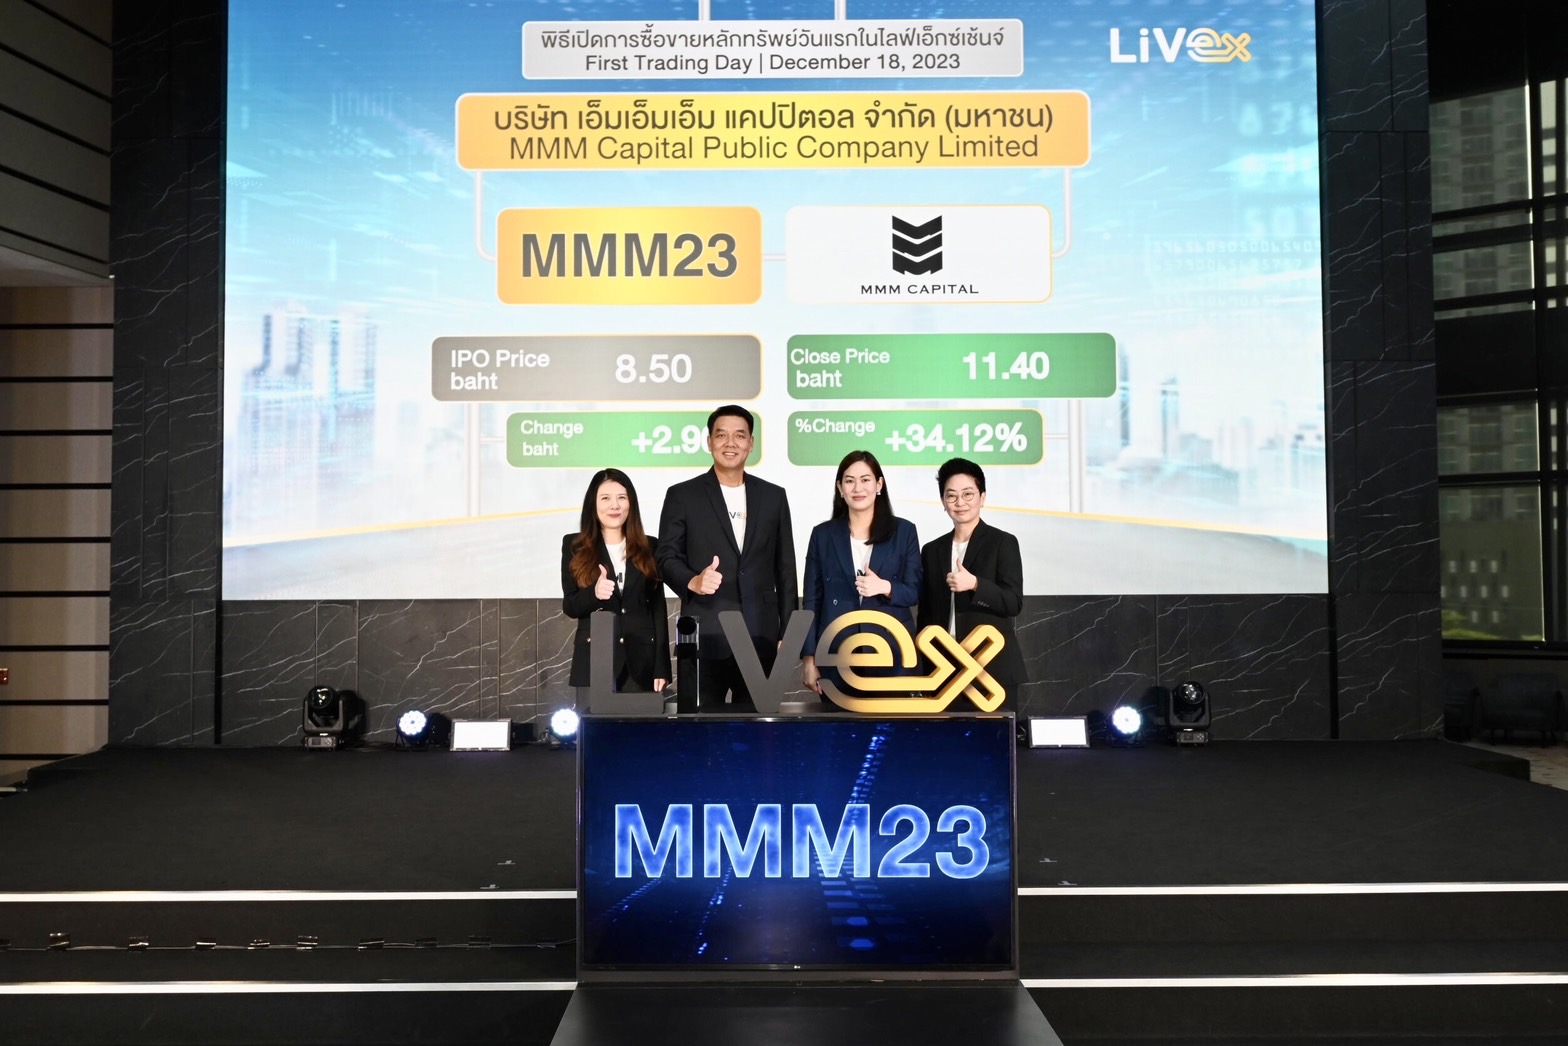 MMM23 เปิดเทรดกระดาน LiVEx วันแรก ราคาพุ่งเหนือจอง 34%